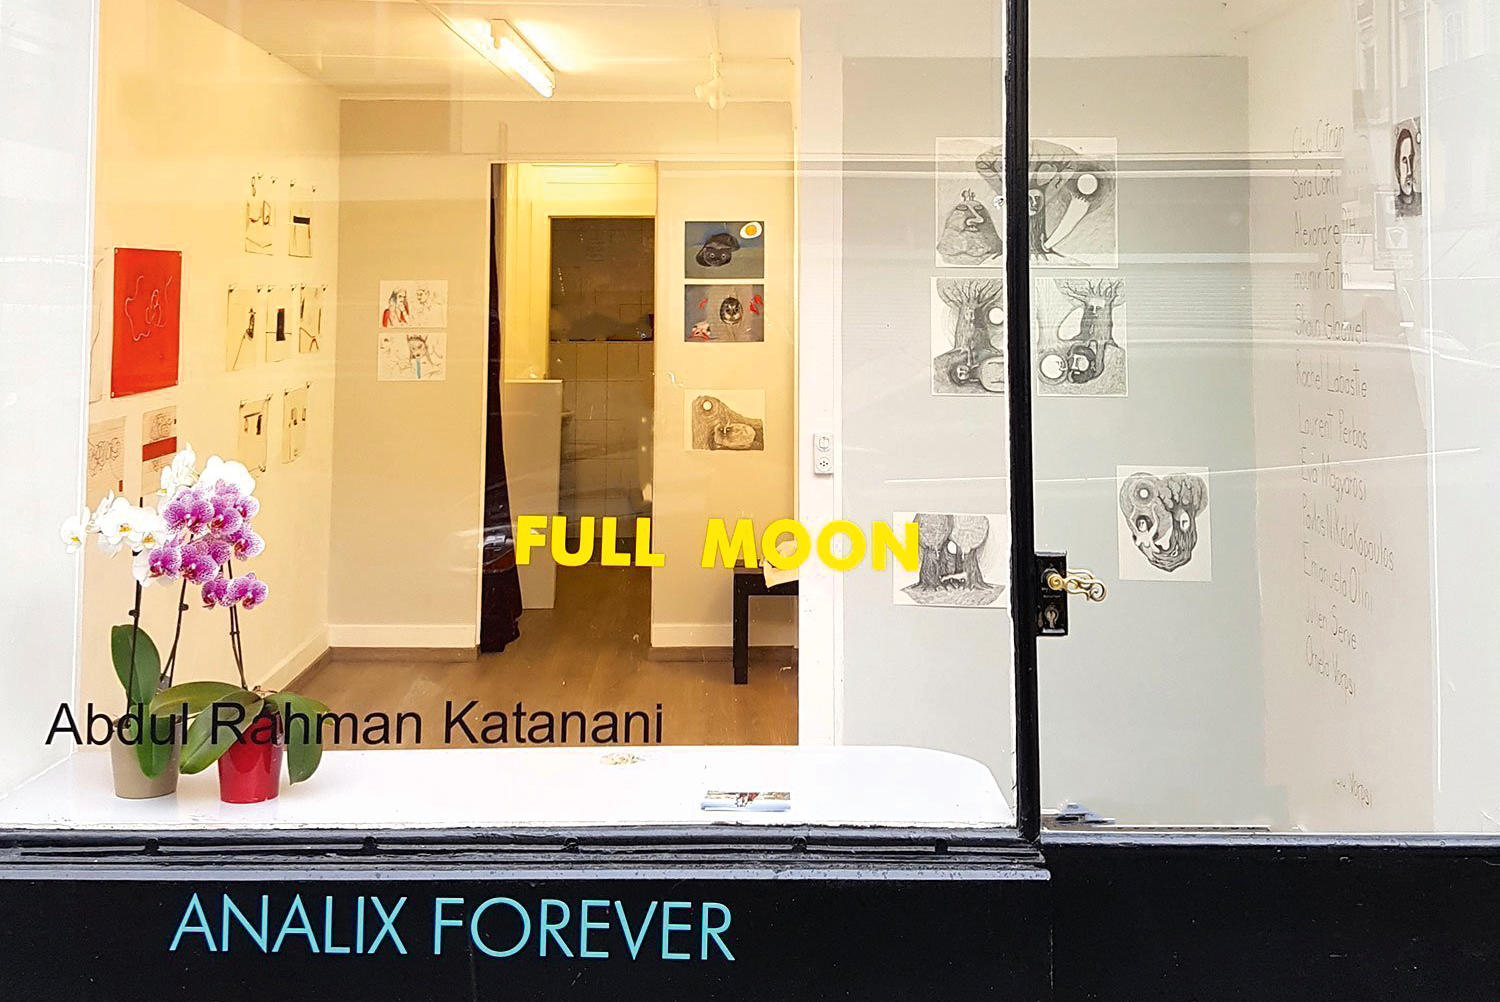 Tiefer Einblick: Das Schaufenster der Galerie Analix Forever, geführt seit 1991 von Barbara Polla.